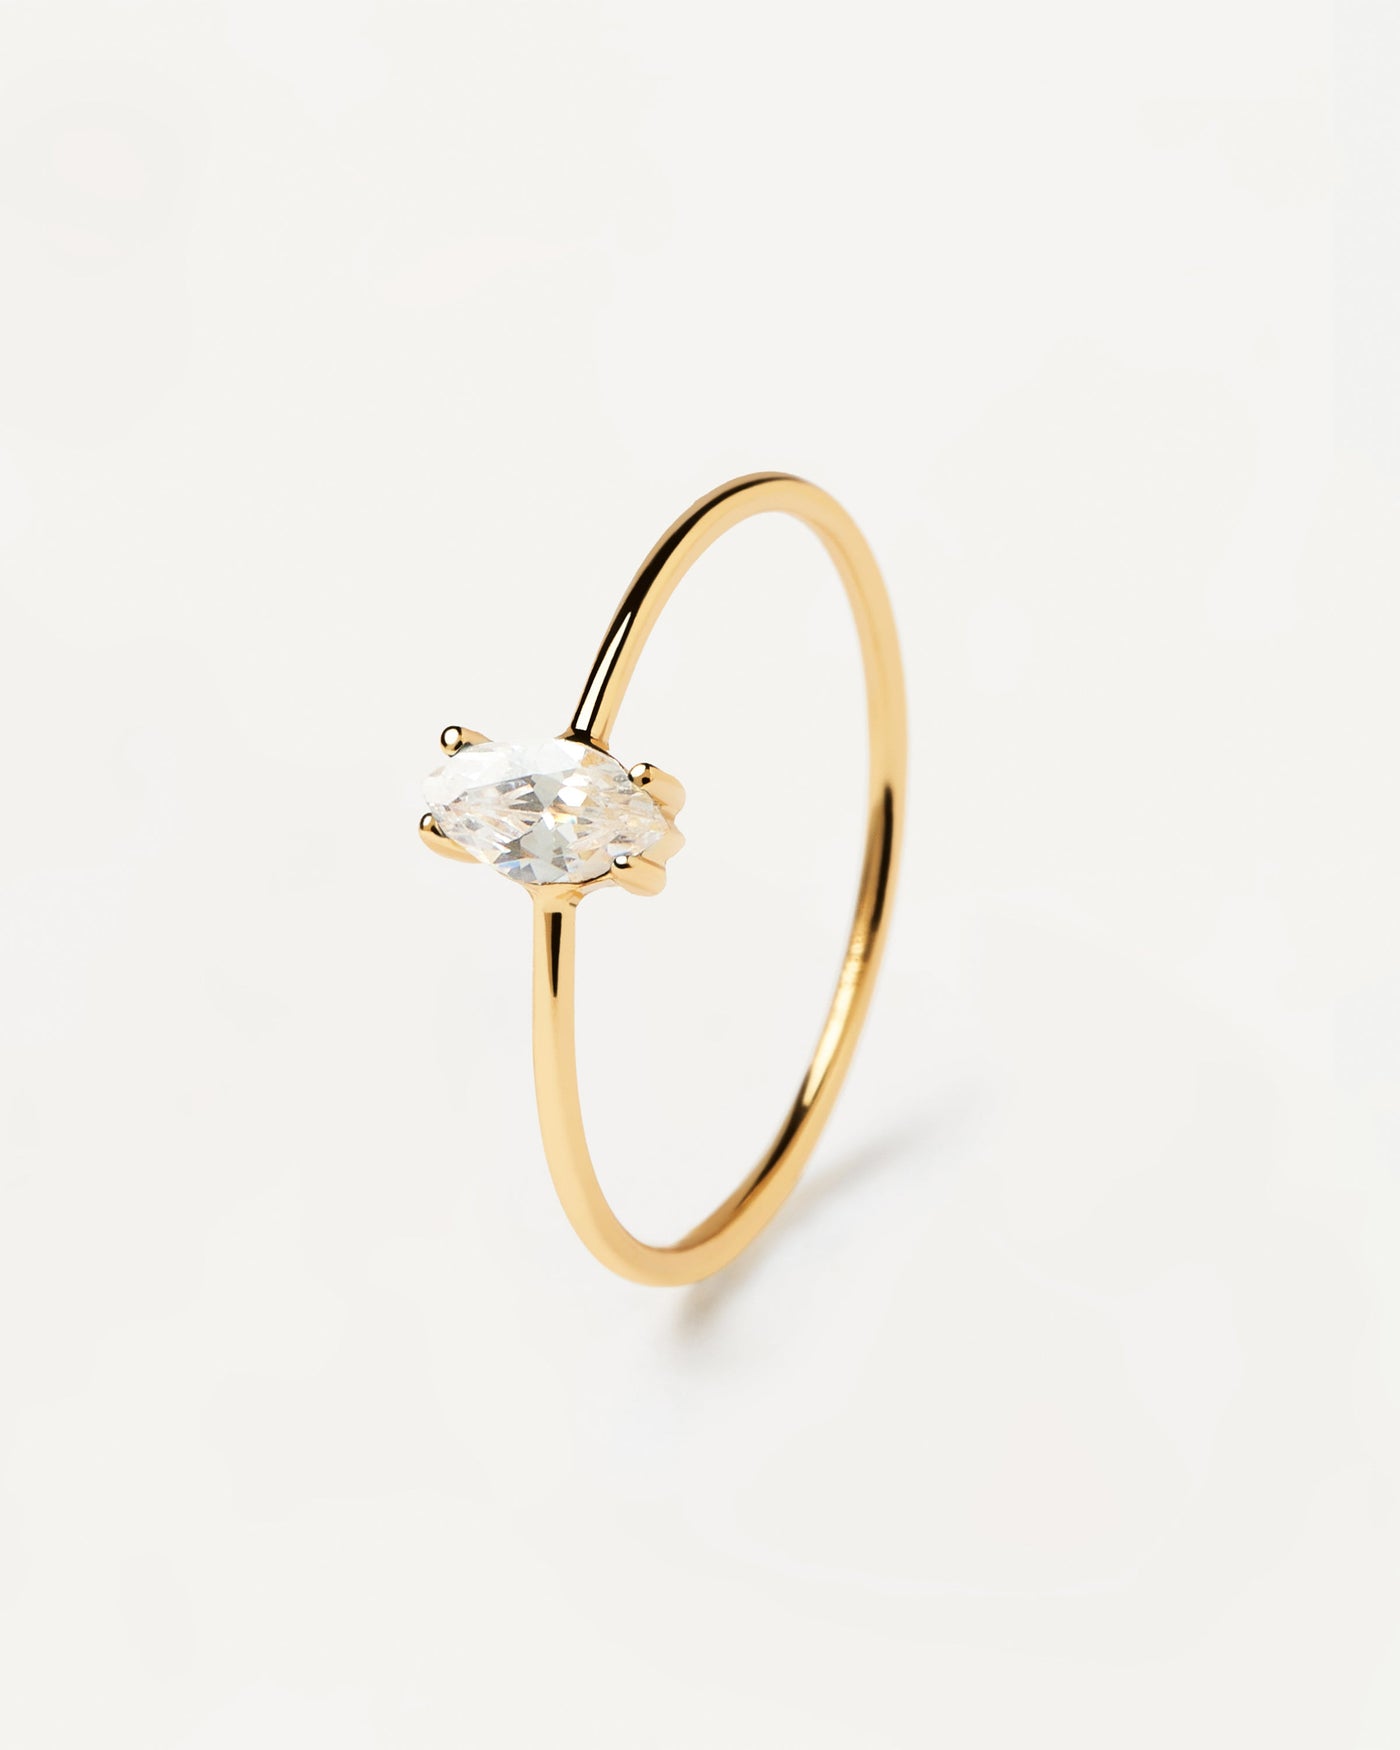 White India Ring. ring aus 18k vergoldetem silber mit einer marquise geschliffenen weissen zirkonia. Erhalten Sie die neuesten Produkte von PDPAOLA. Geben Sie Ihre Bestellung sicher auf und erhalten Sie diesen Bestseller.